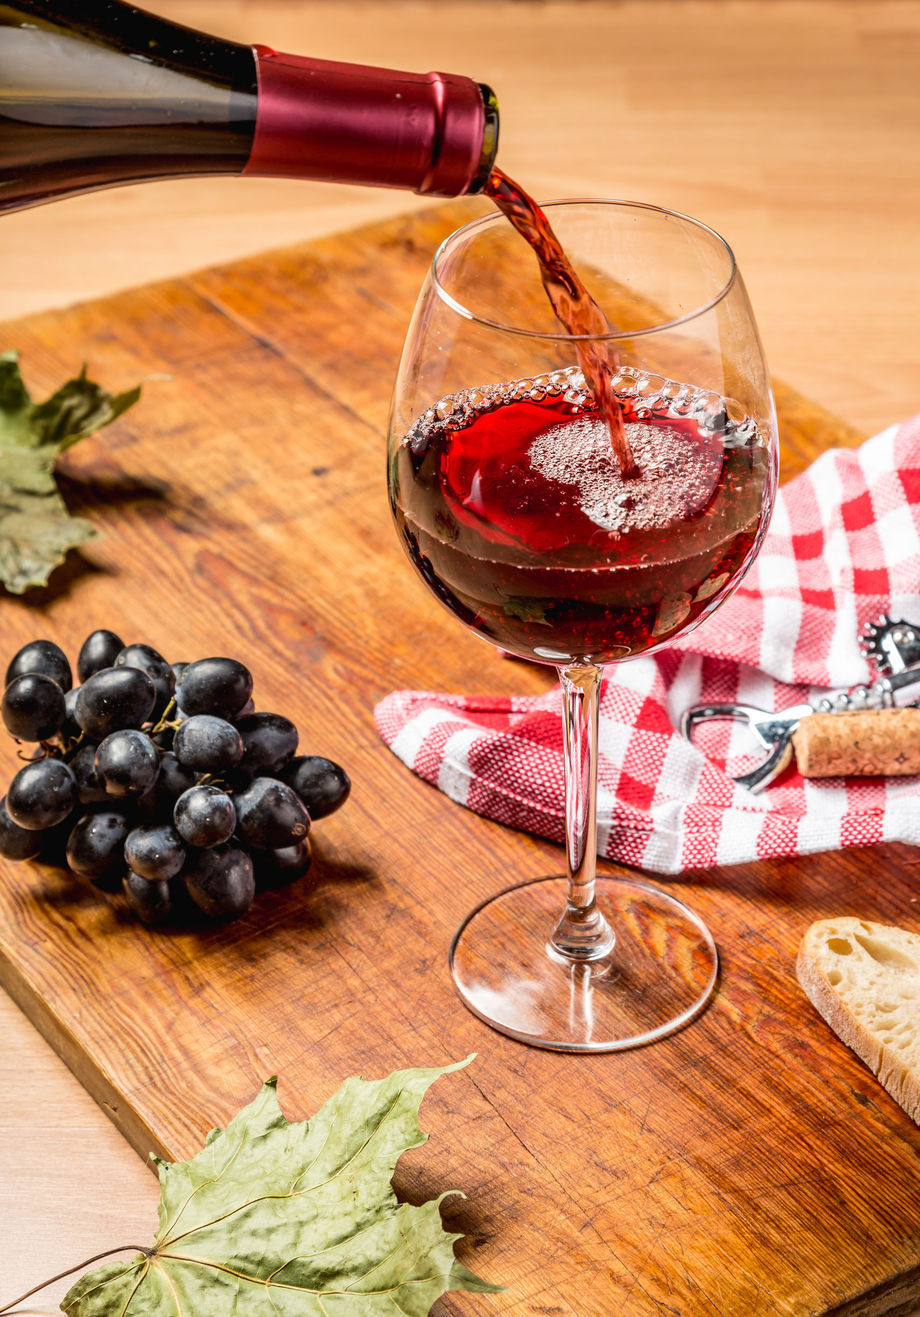 Красное вино может усугубить мигрень.